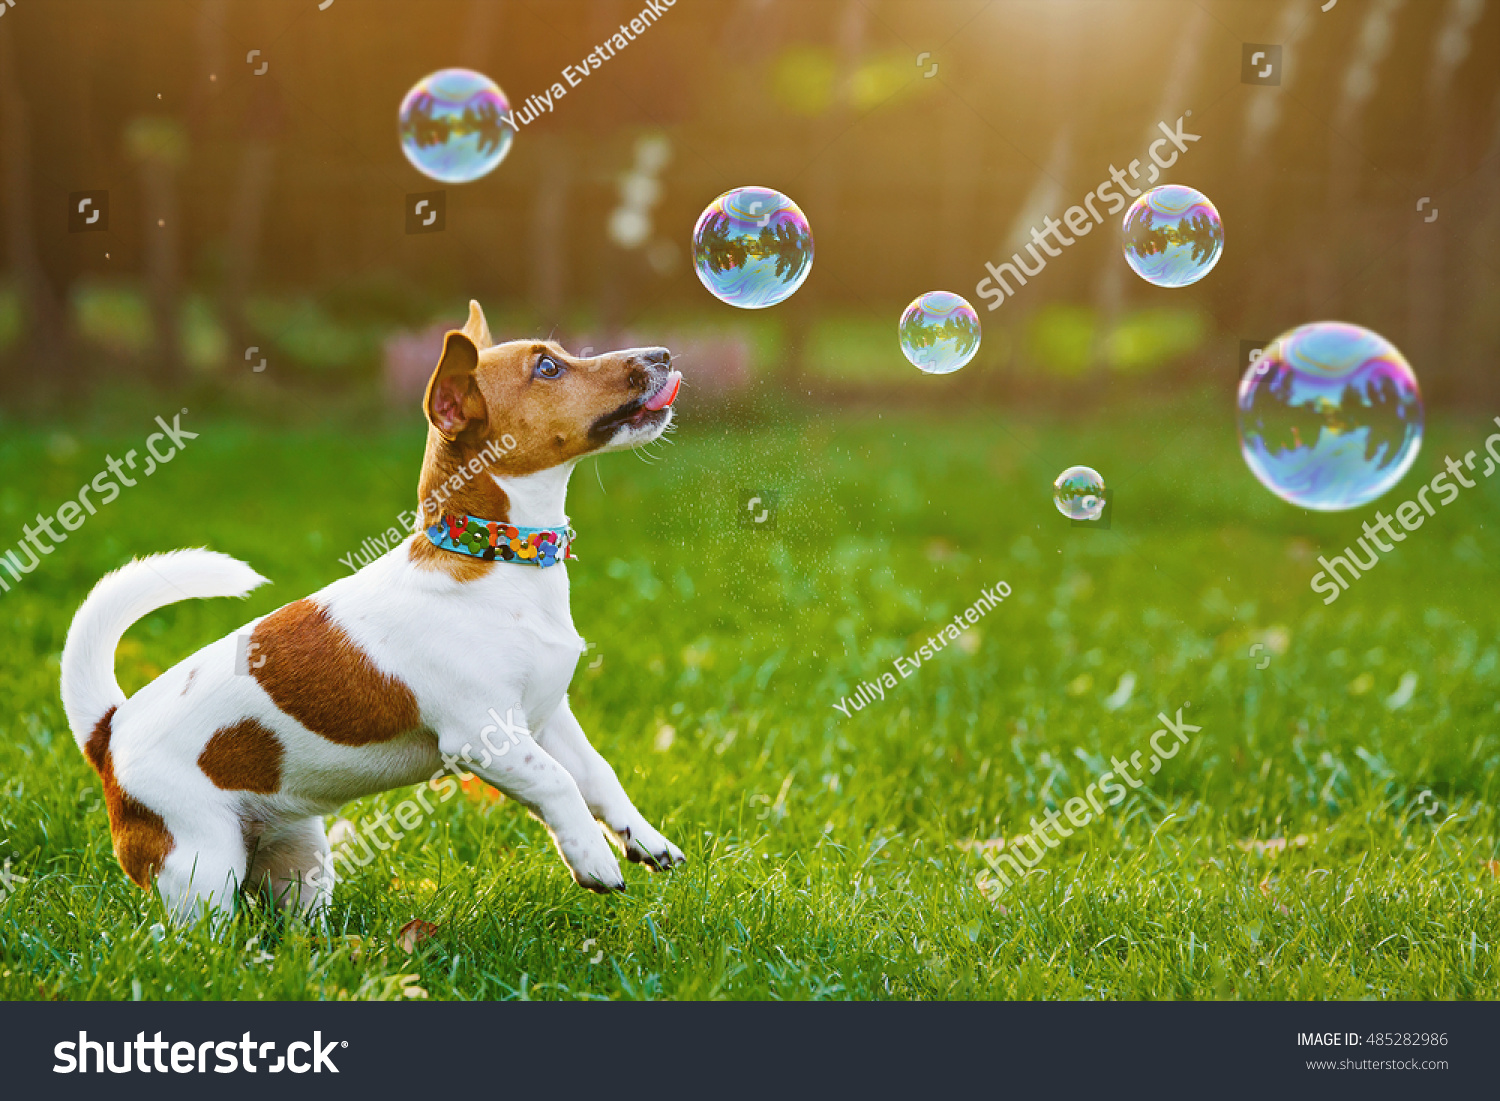 28,519 Dog bubbles Images, Stock Photos & Vectors | Shutterstock